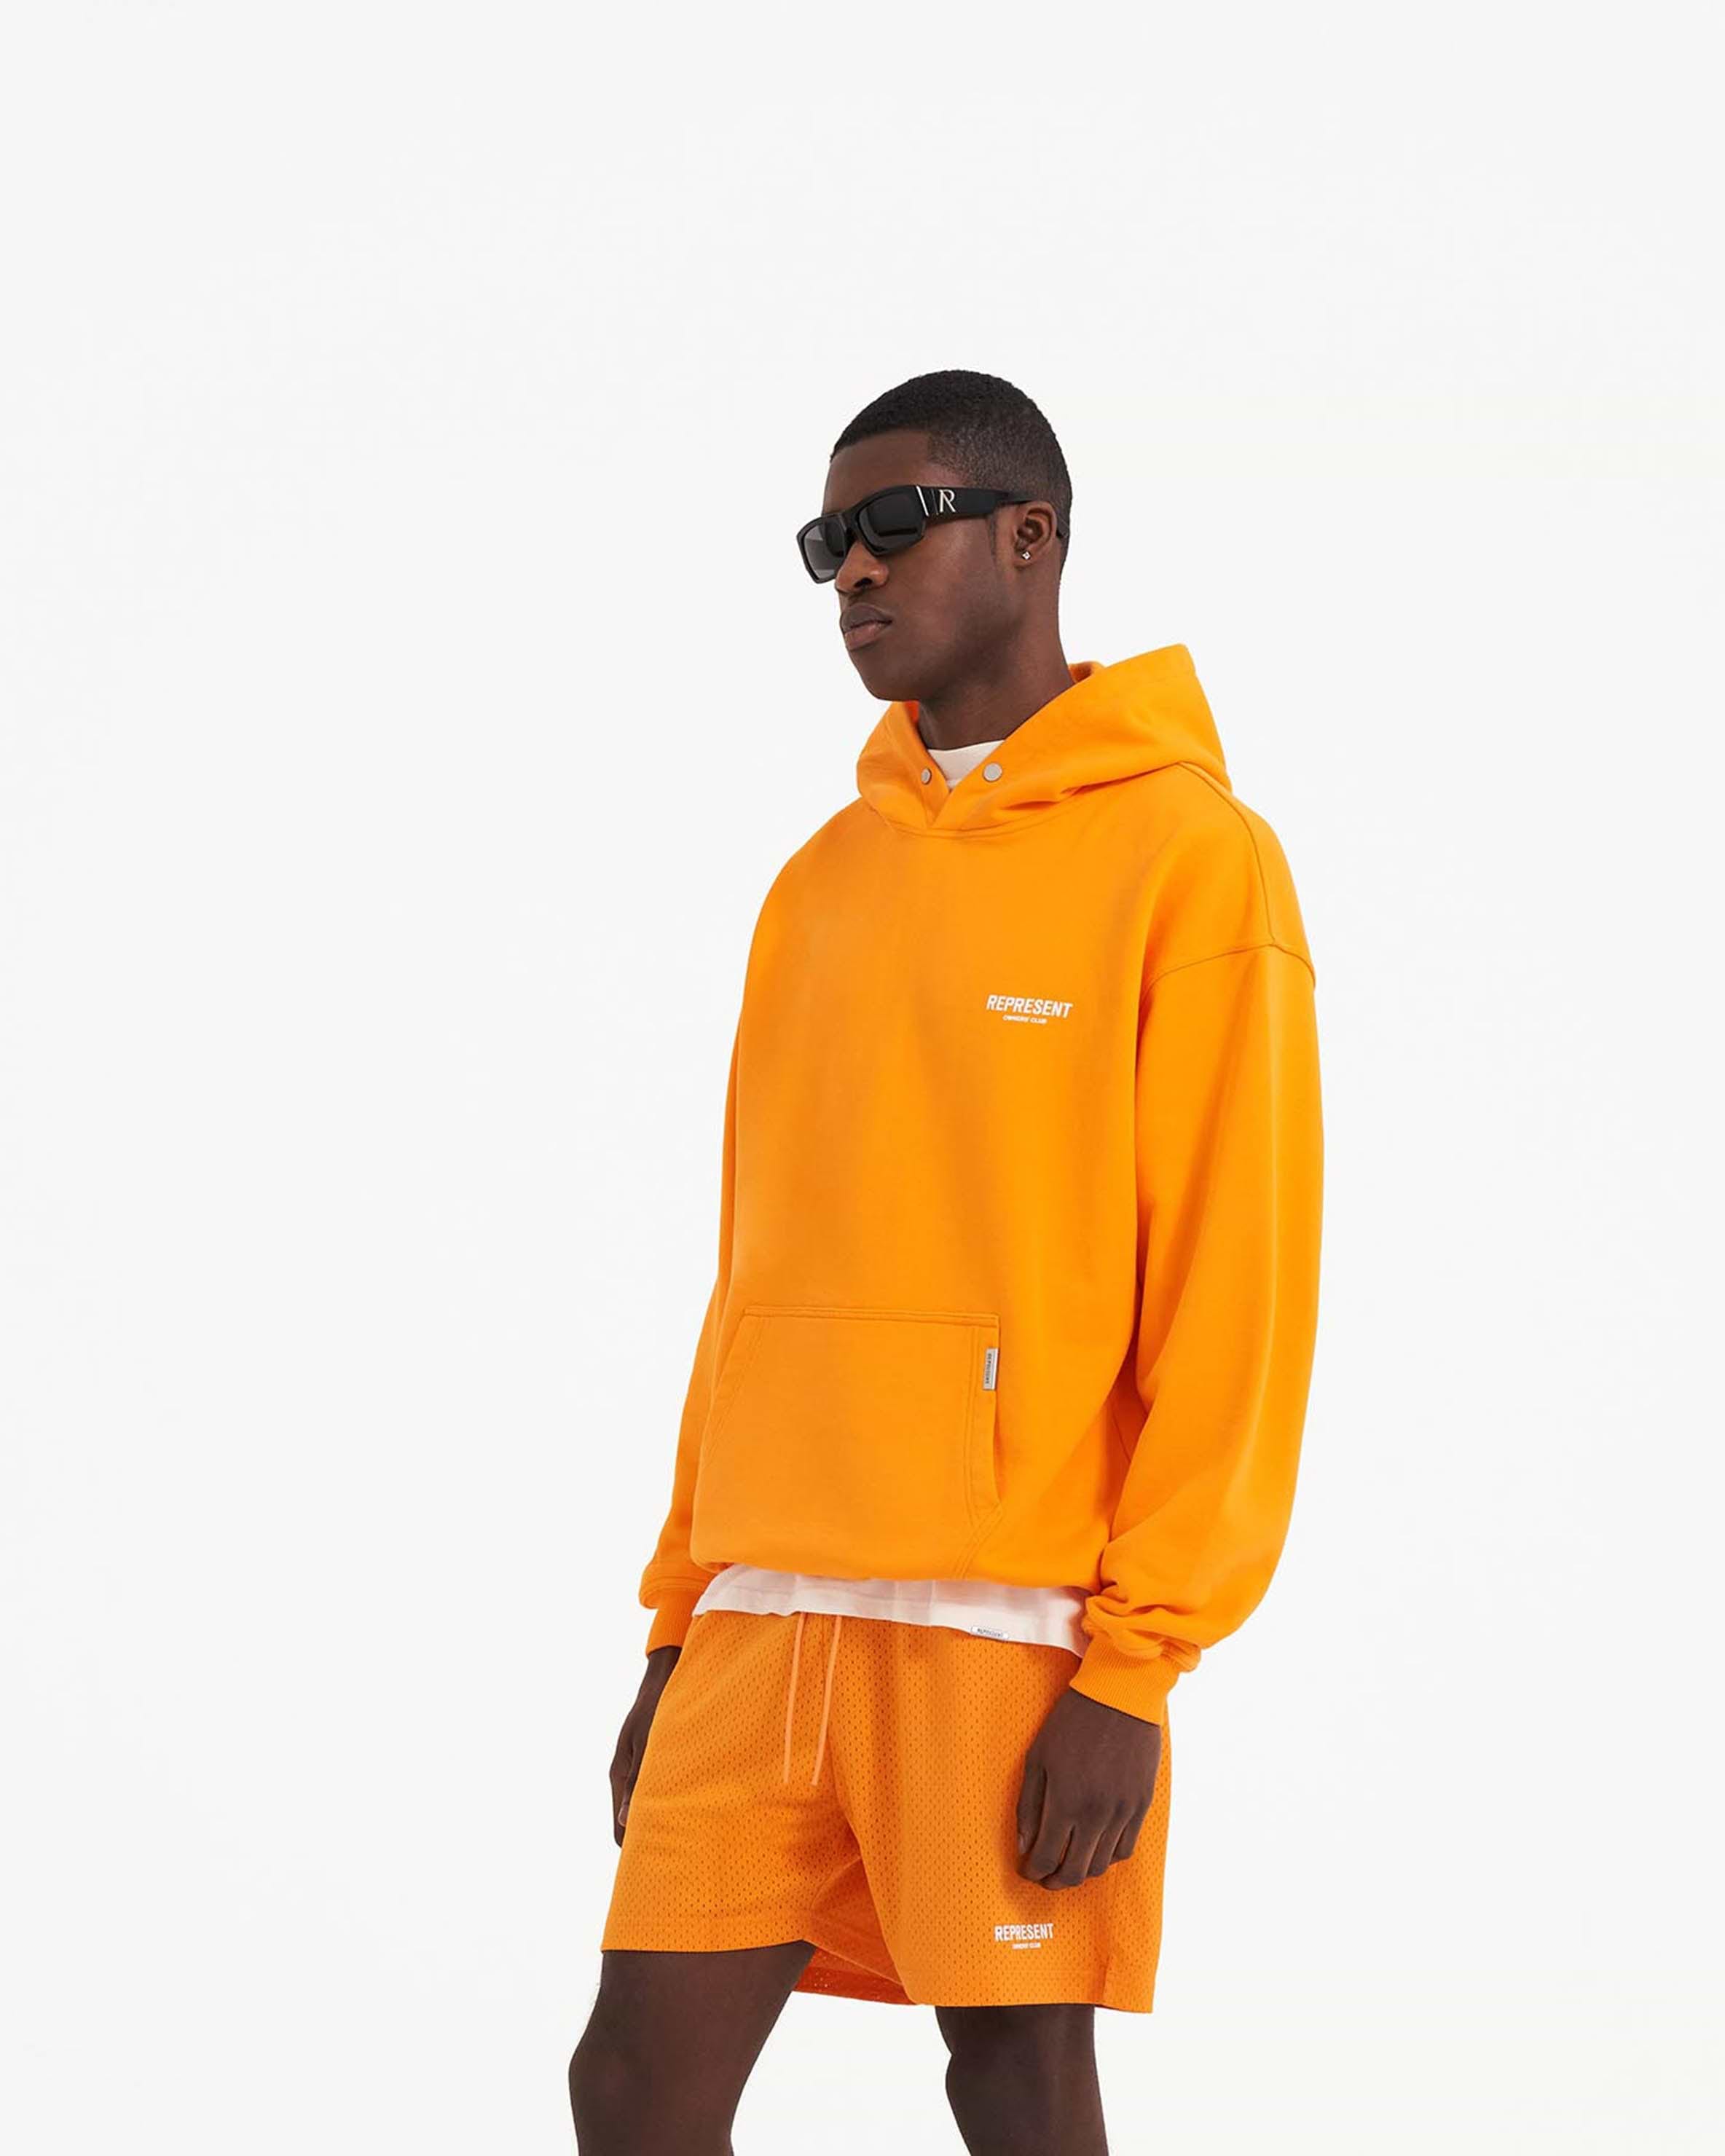 Neon Orange Hoodie | Owners' Club | REPRESENT CLO